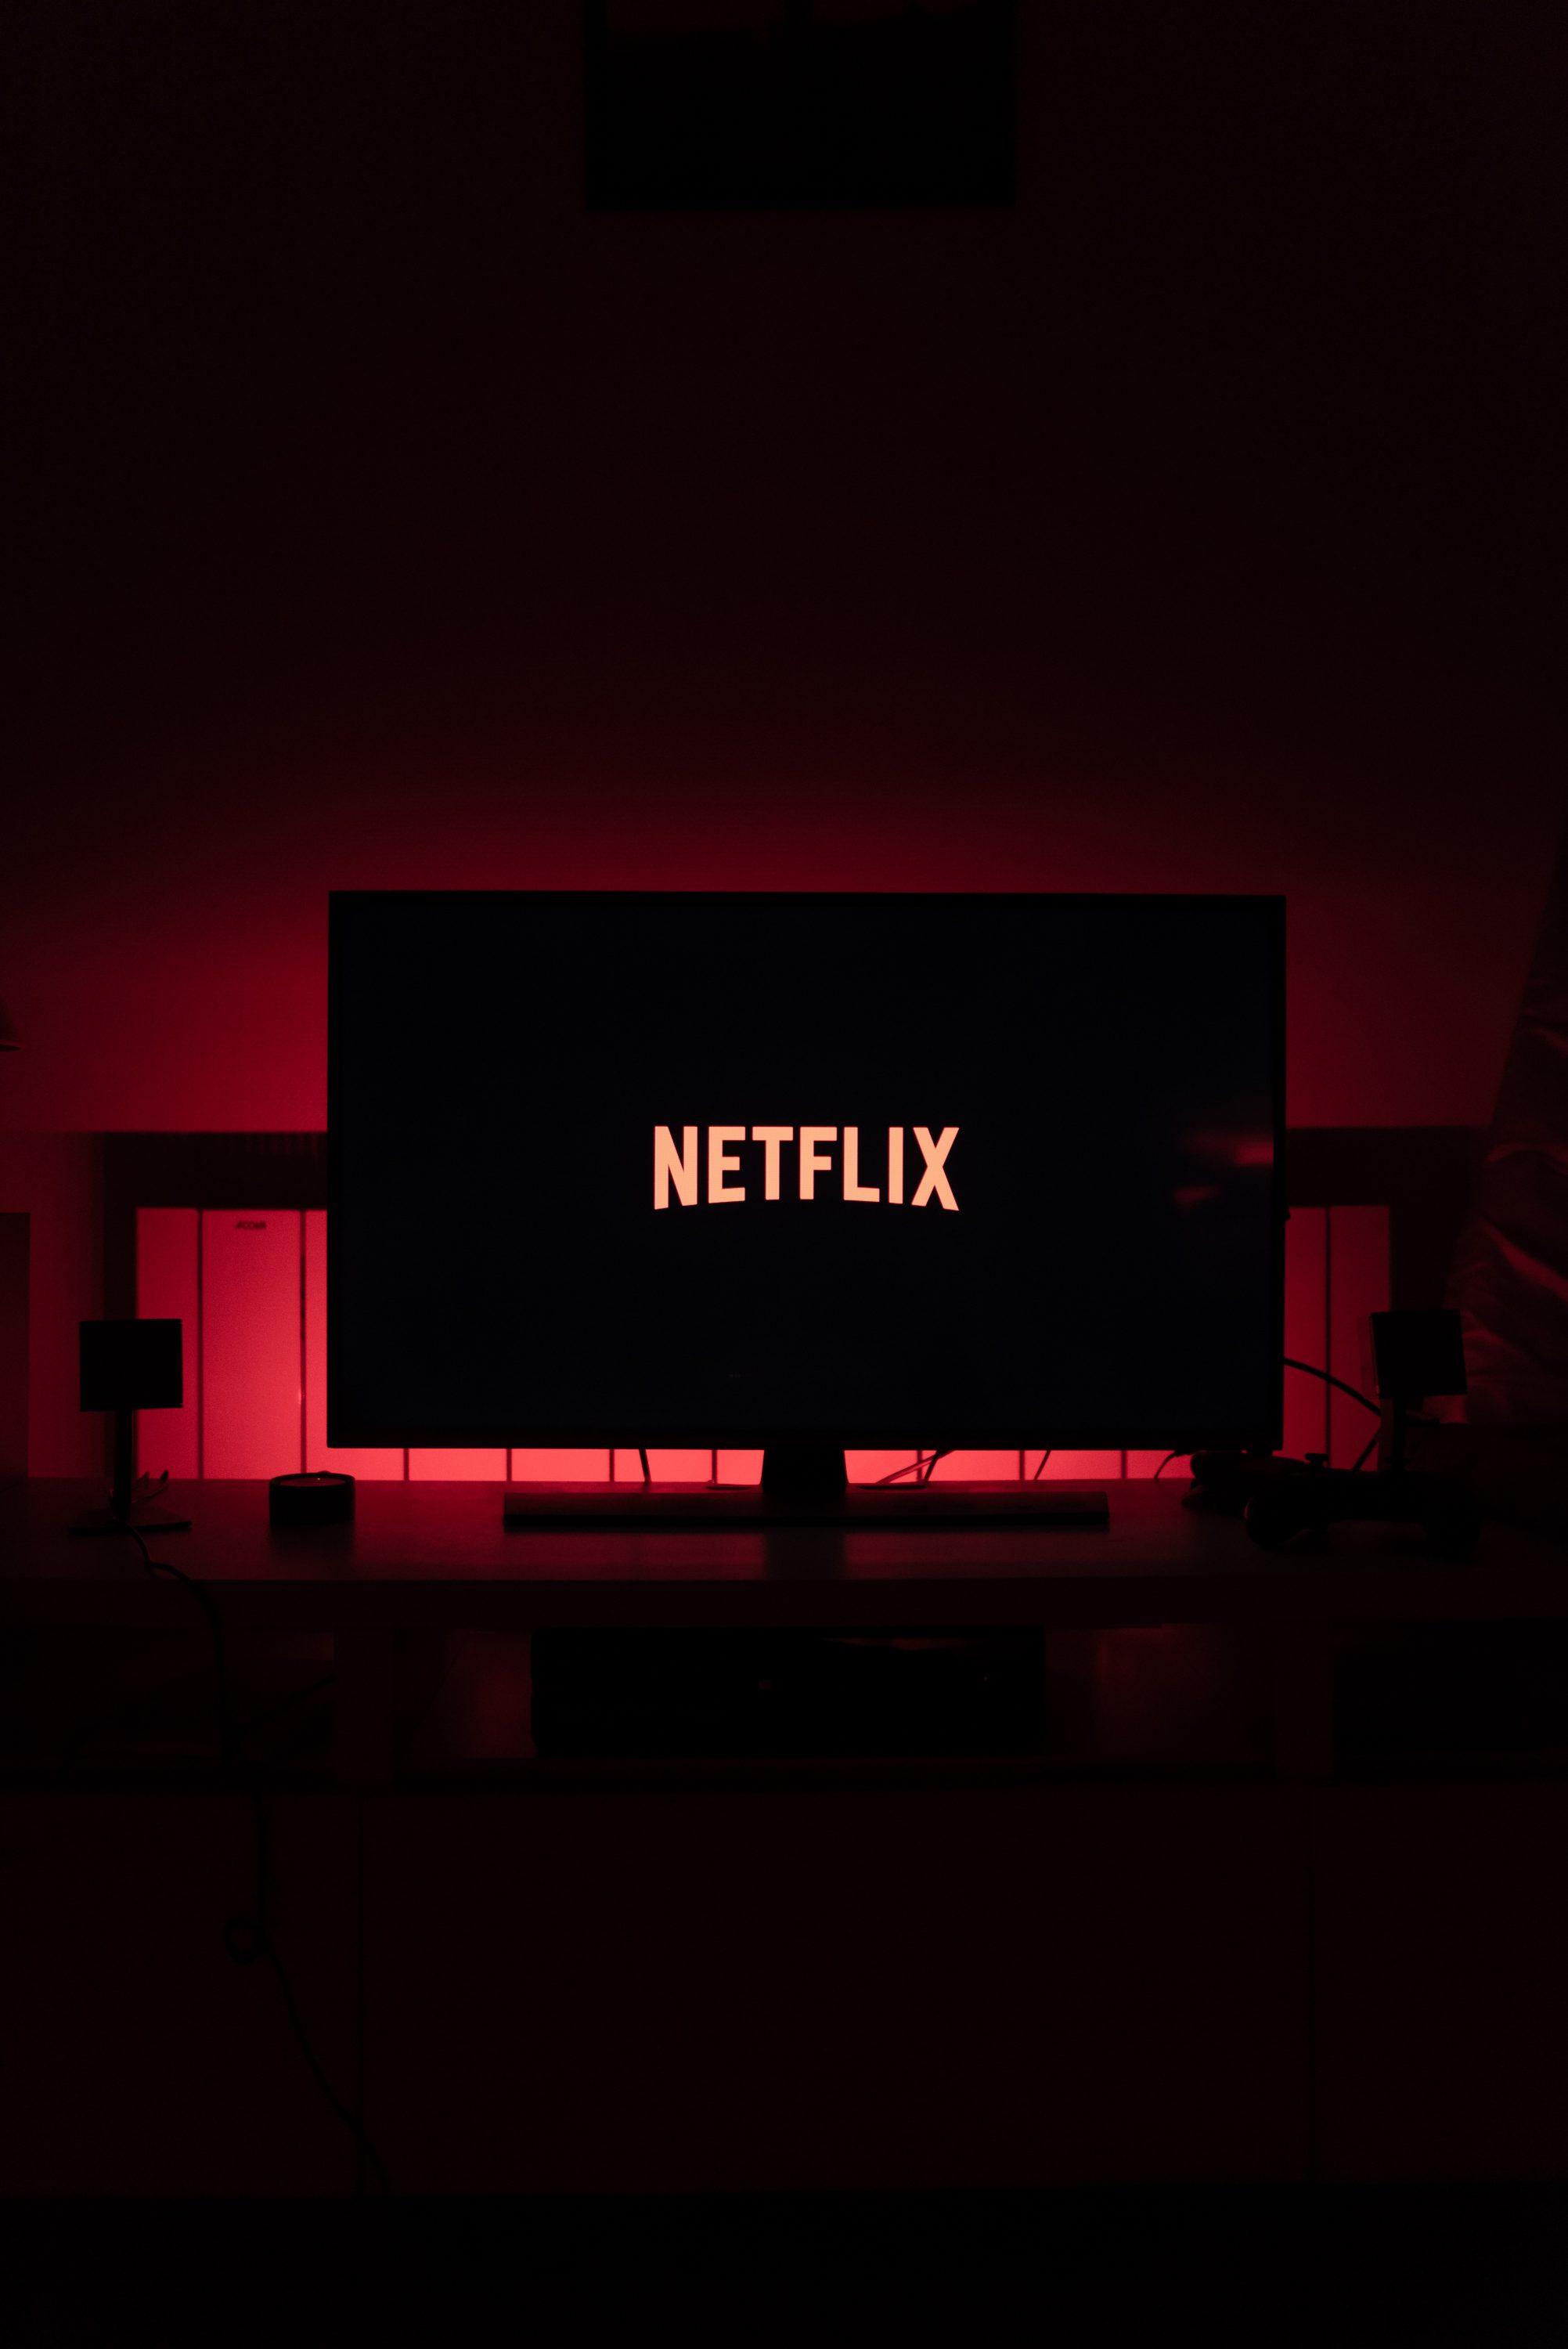 Nwtflix Logo - Netflix Logo on TV Free. Bucket